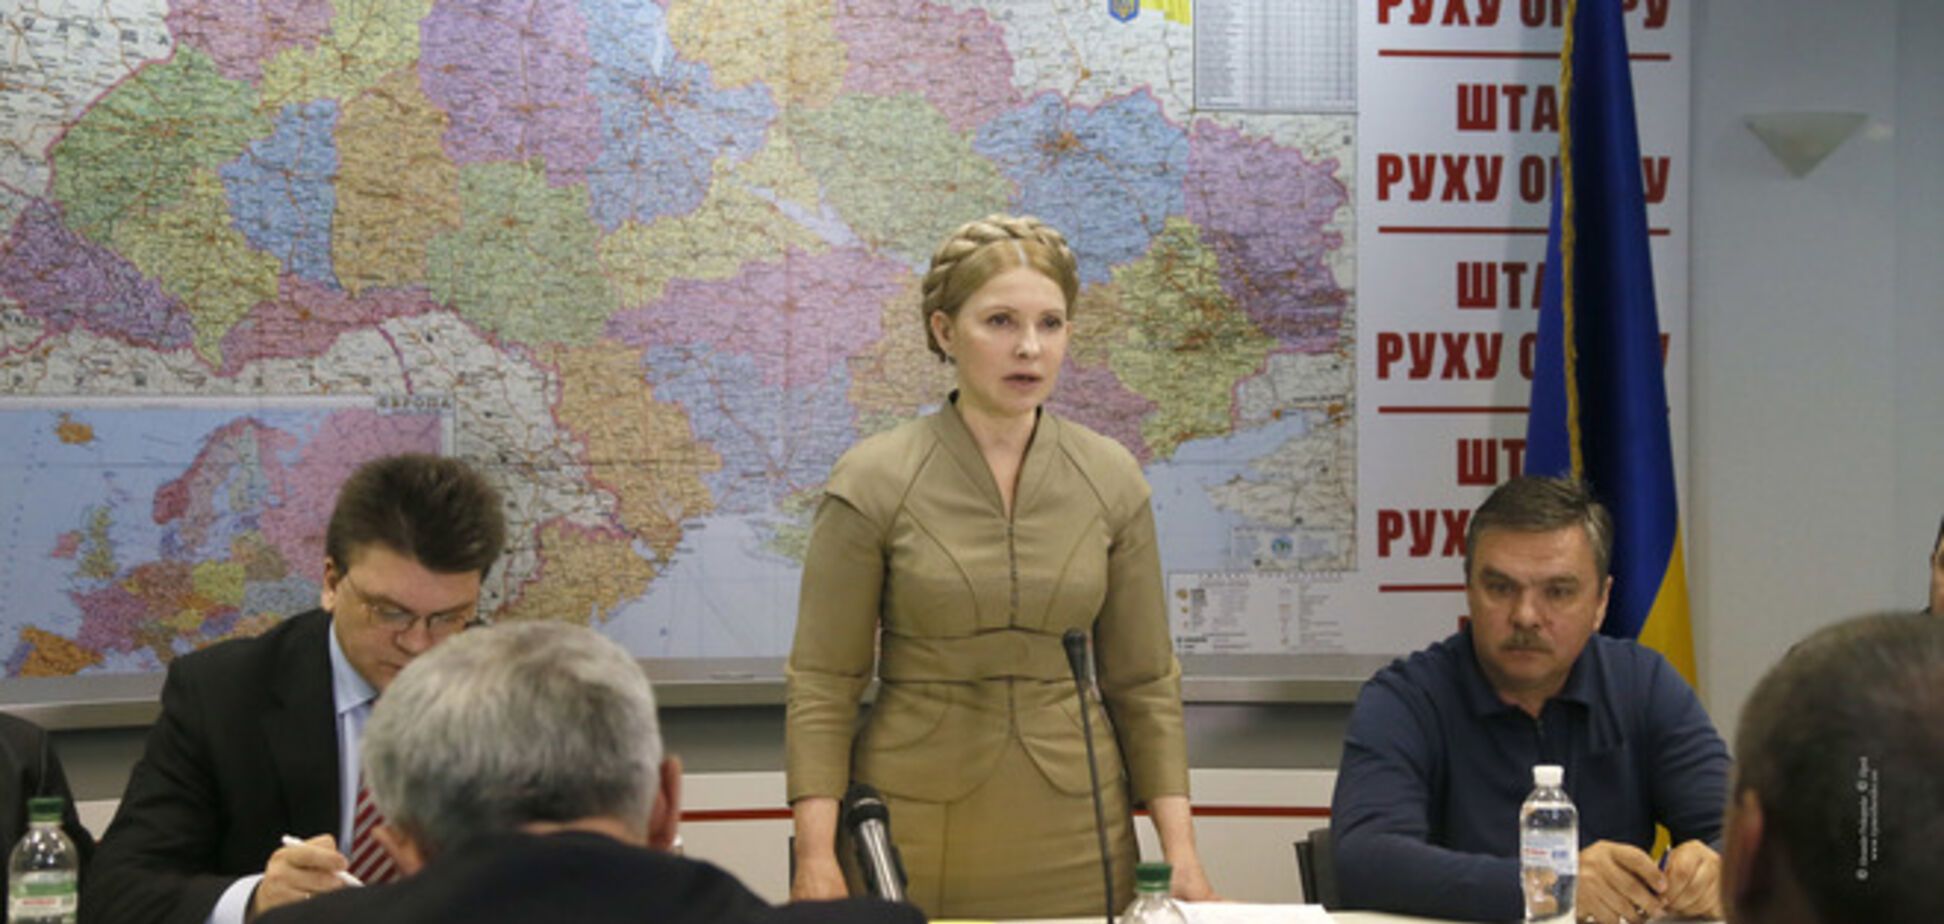 'Рух опору' Тимошенко оказался недееспособным